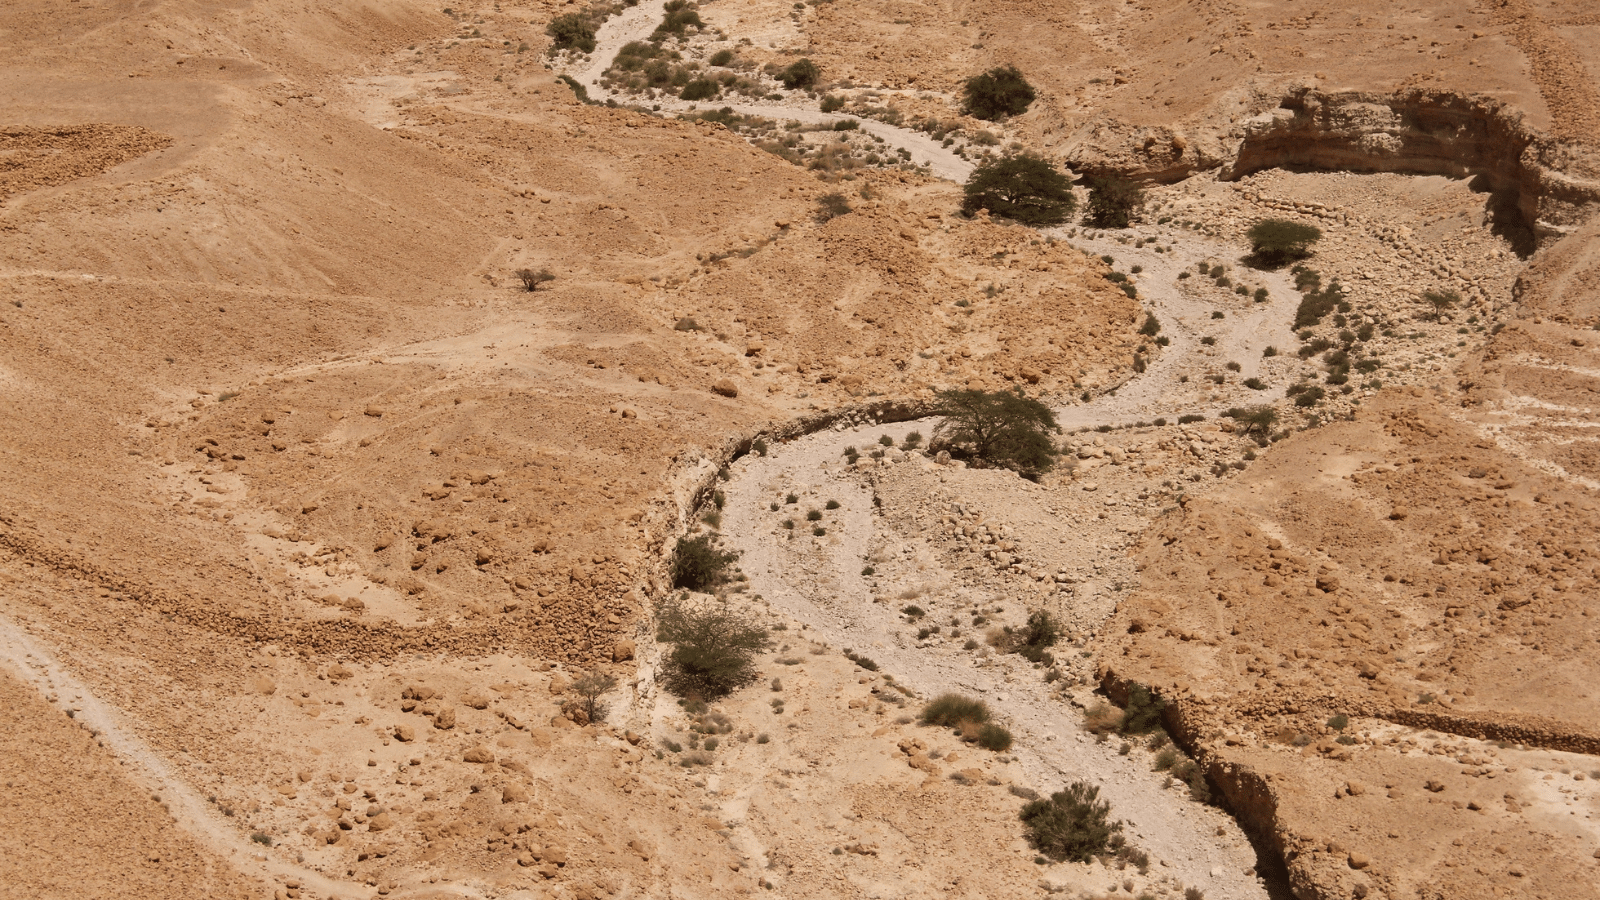 Dry river bed in desert land